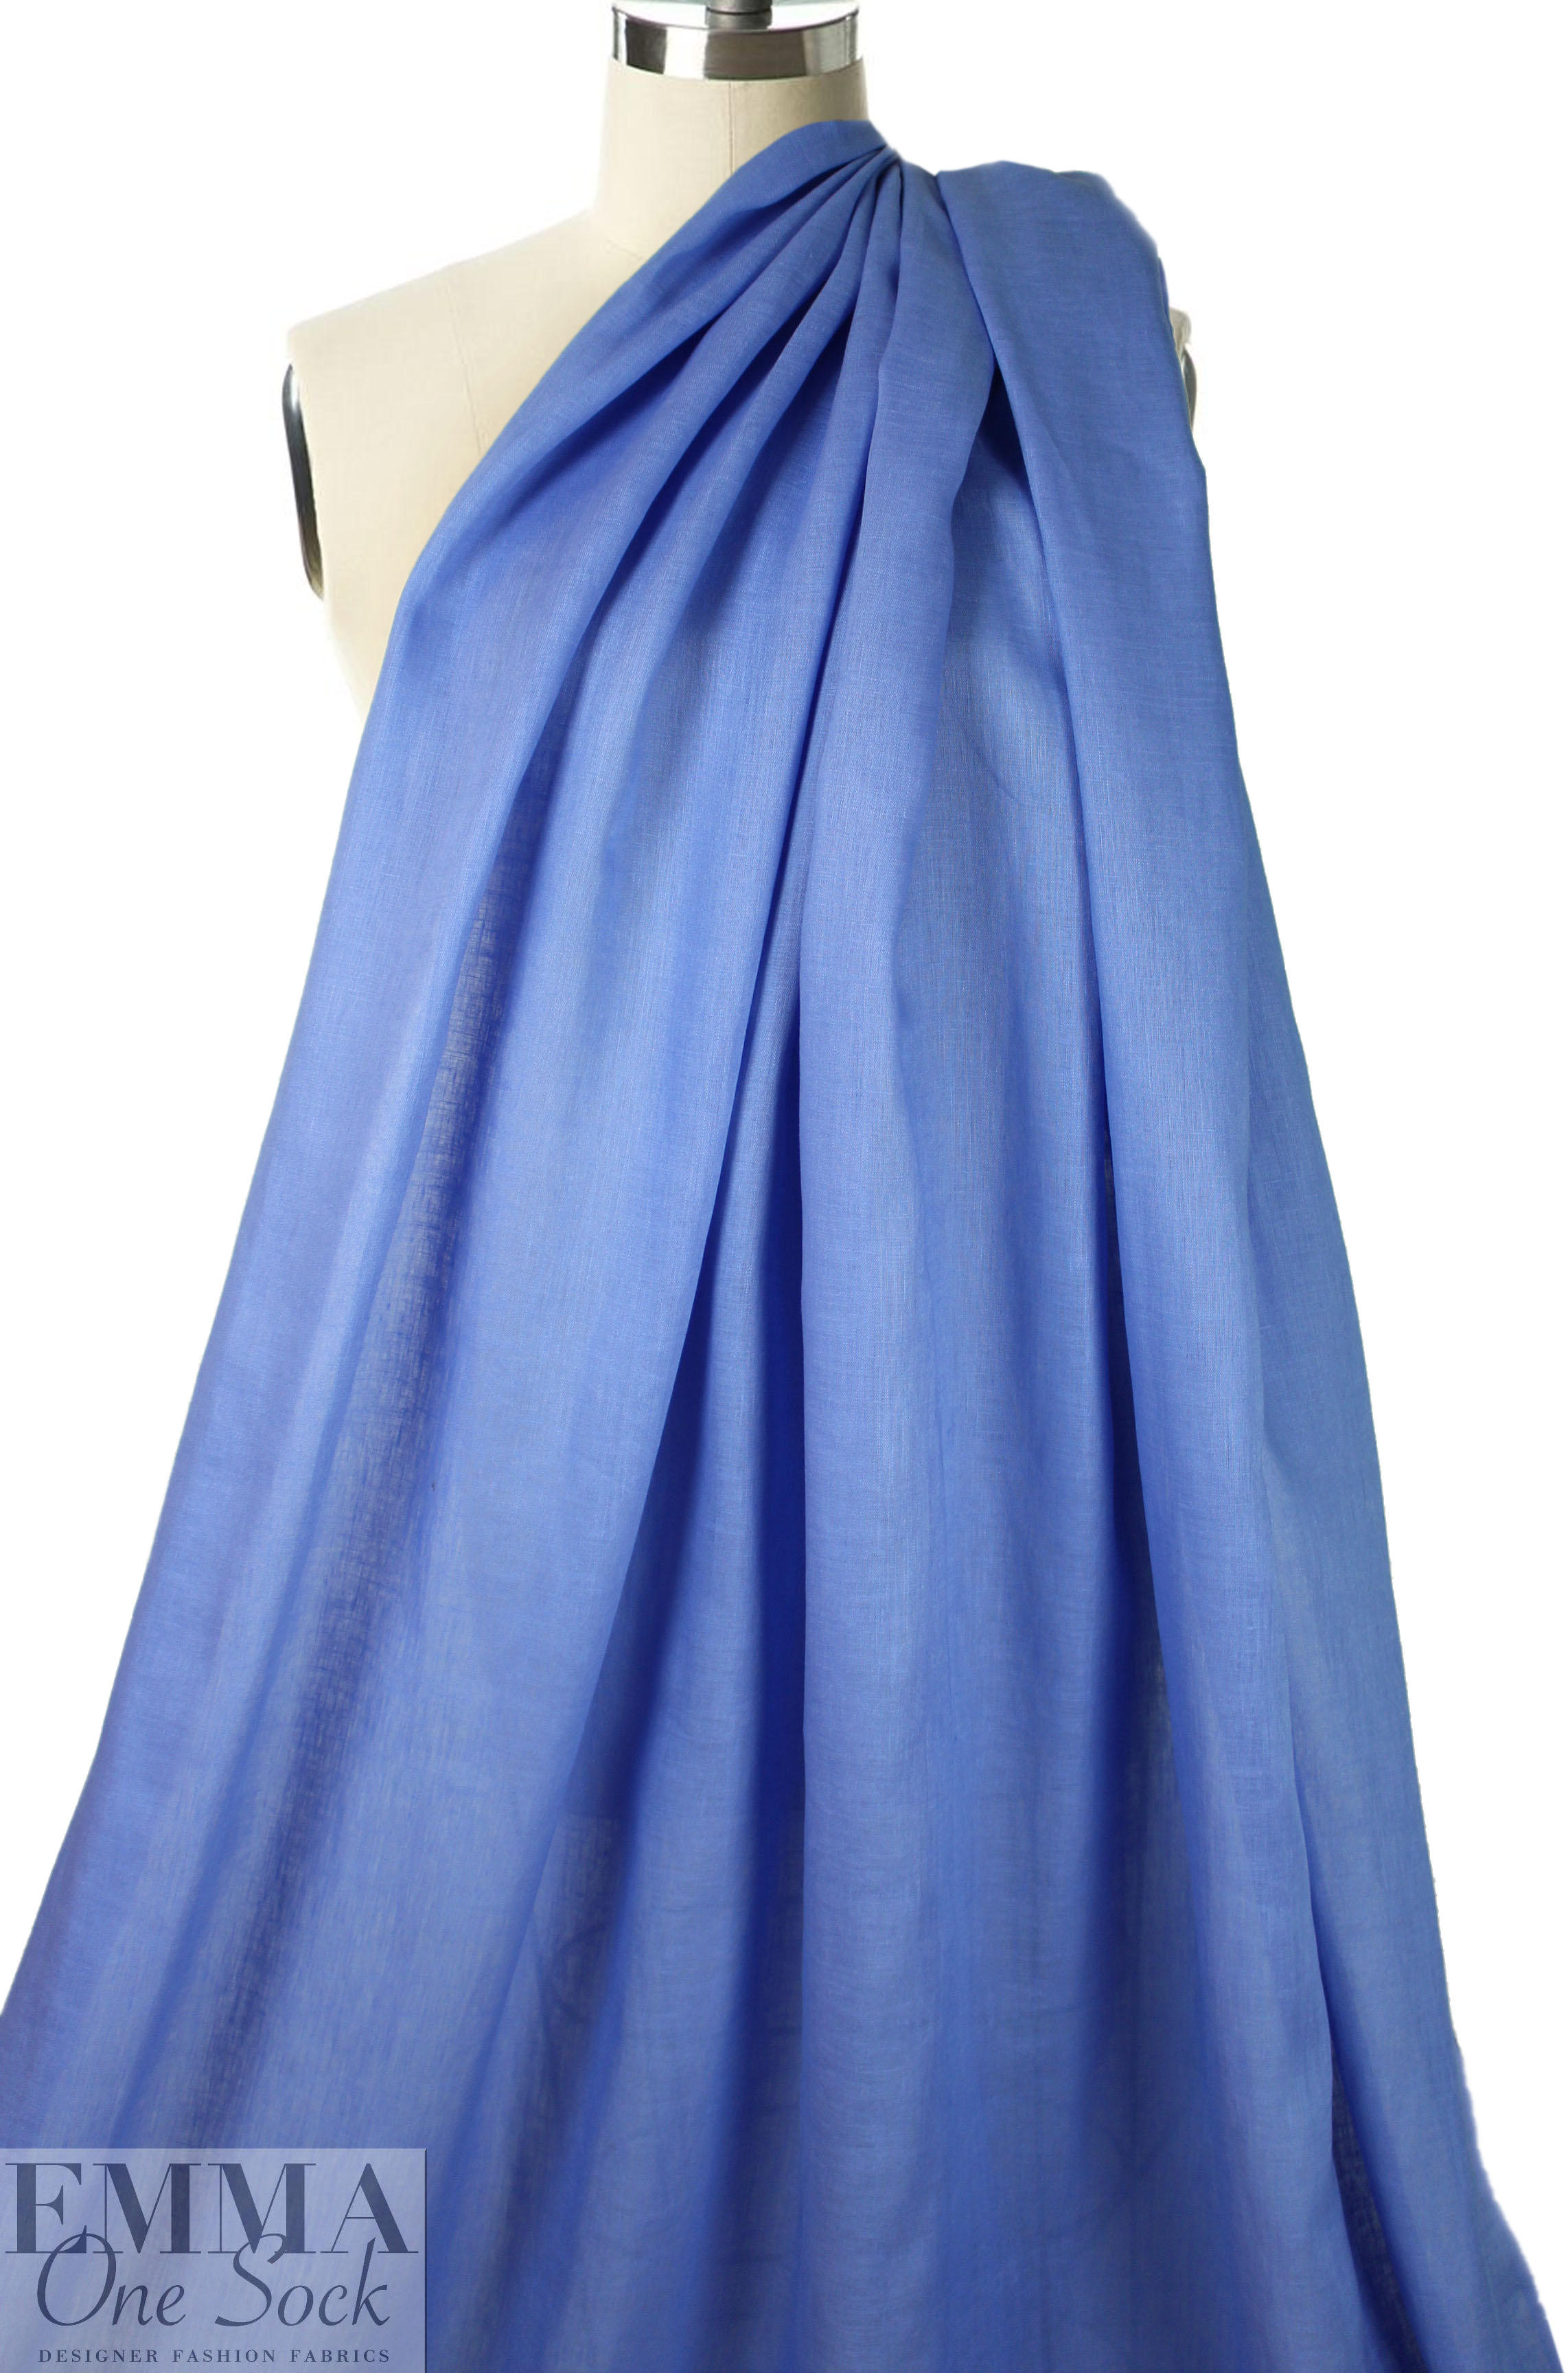 European lightweight linen woven - French blue from EmmaOneSock.com